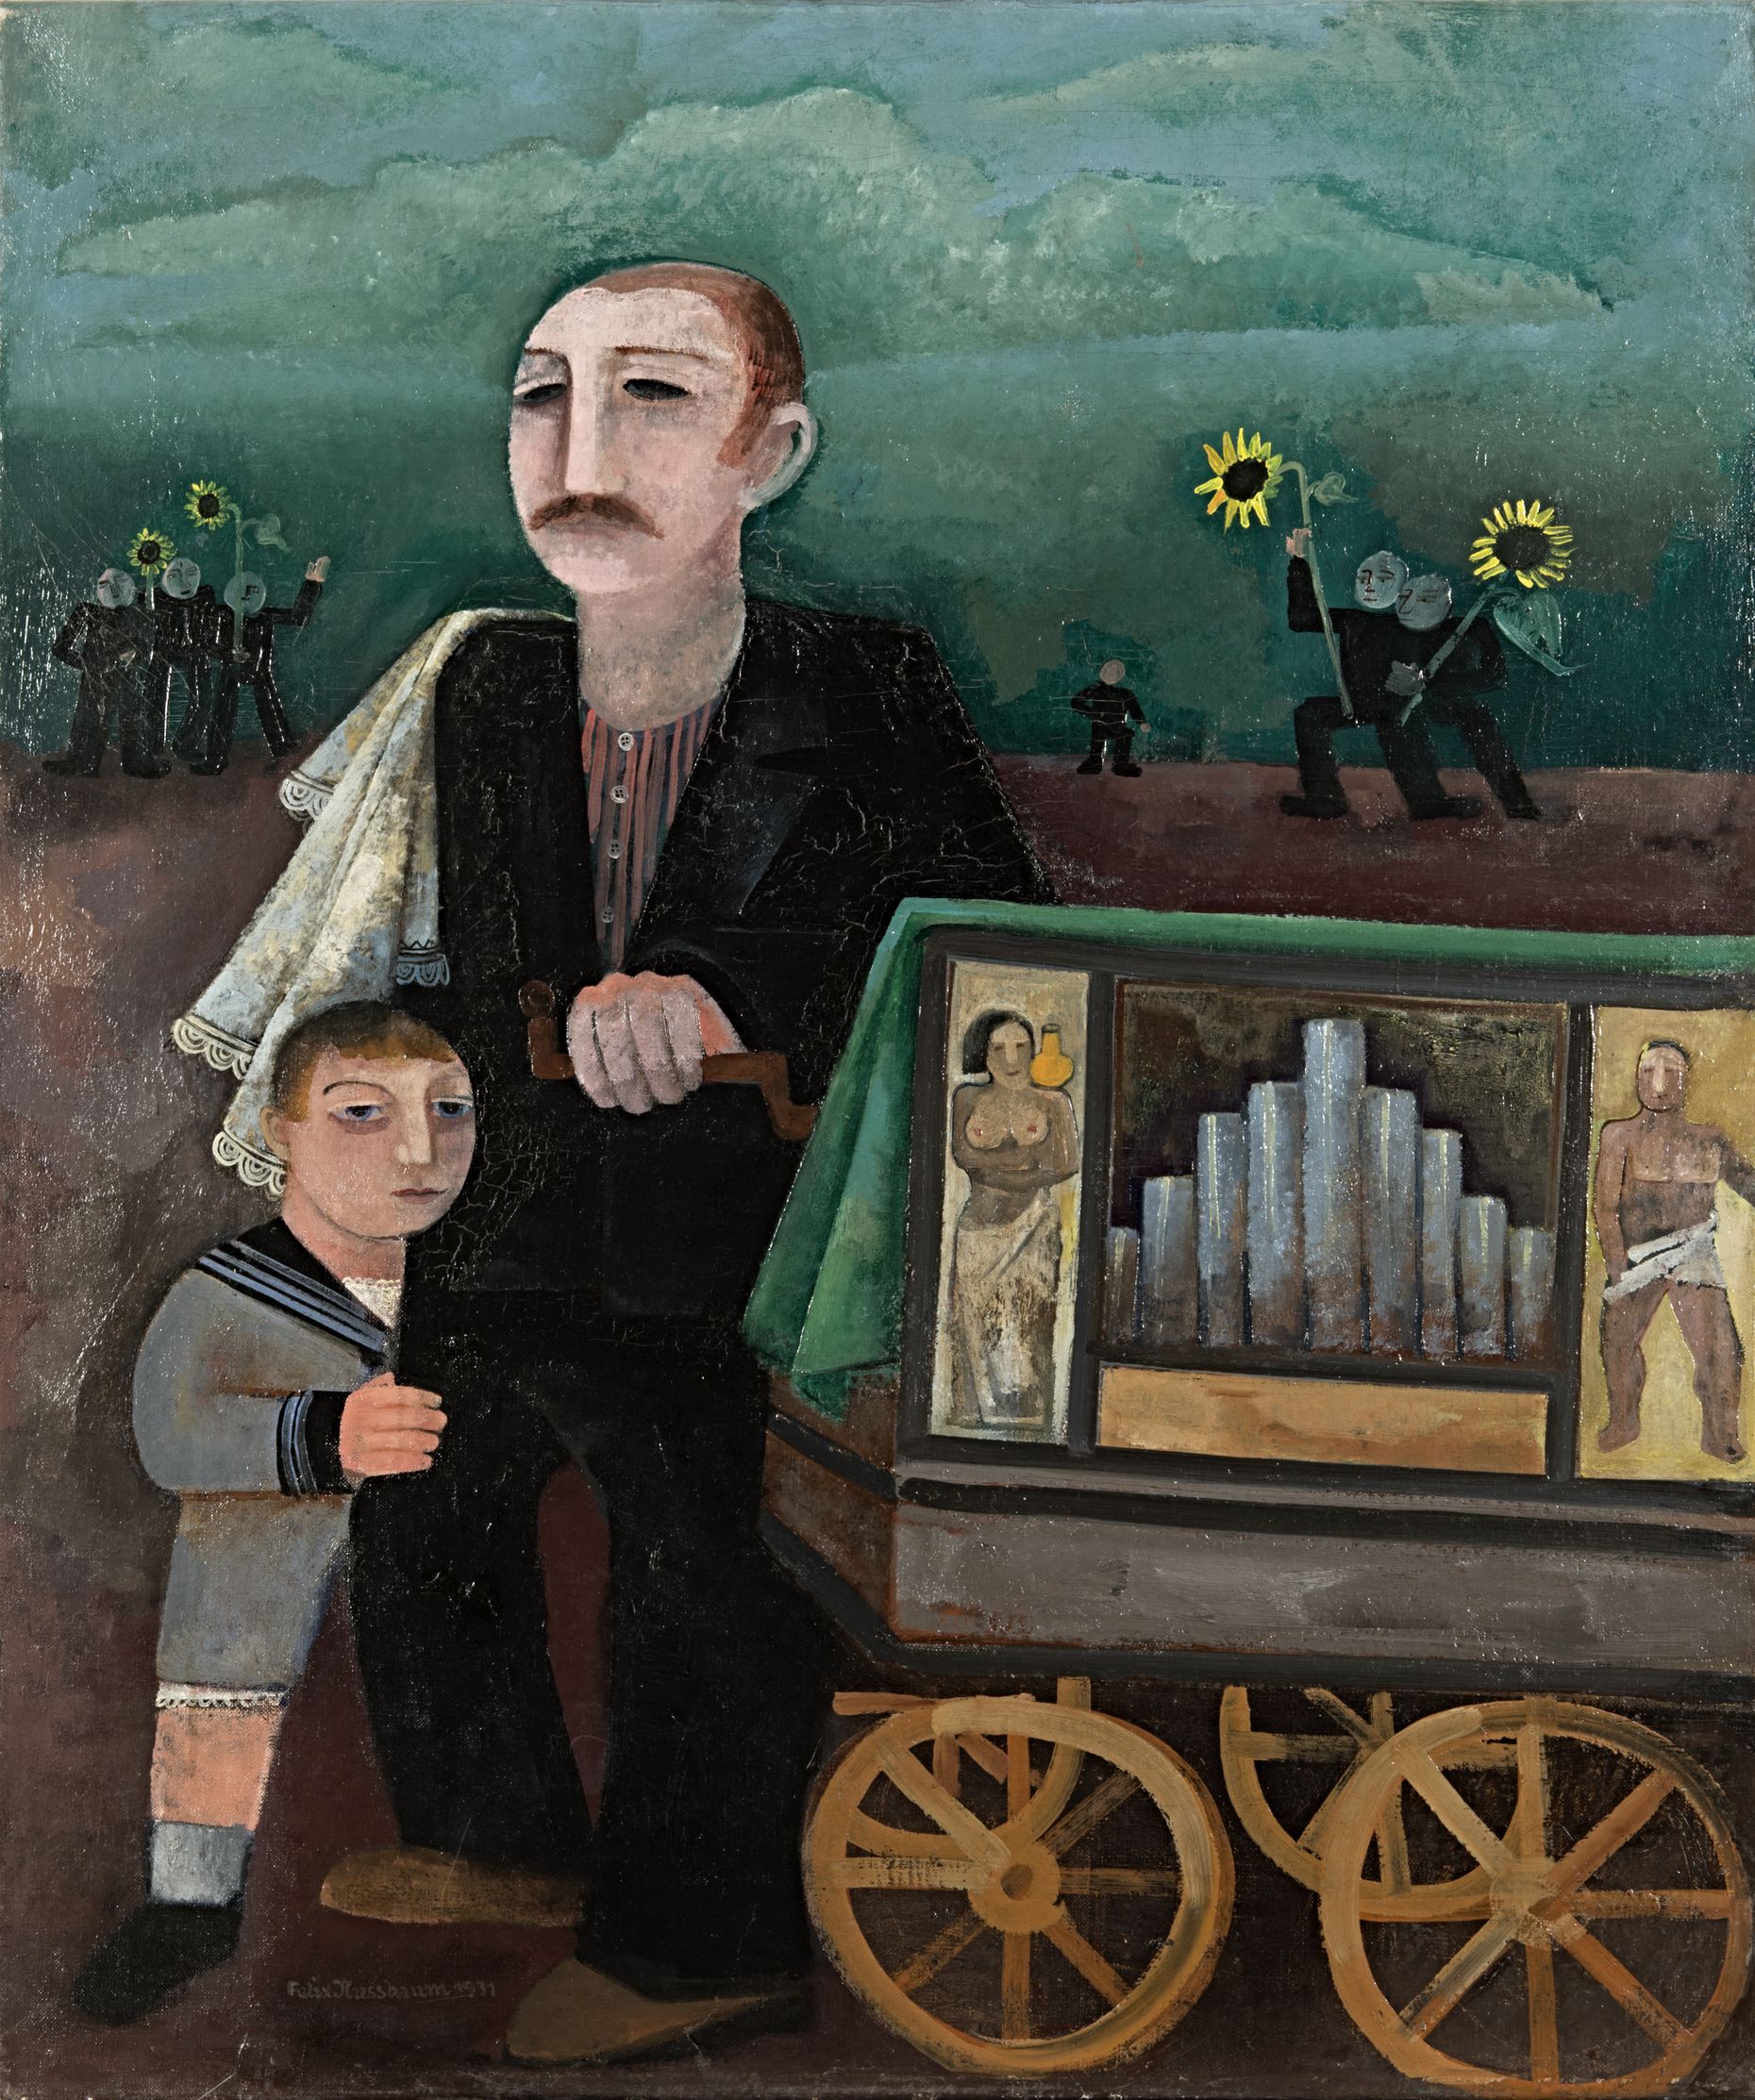 Gemälde von Felix Nussbaum, Öl auf Leinwand, 88 x 73 cm